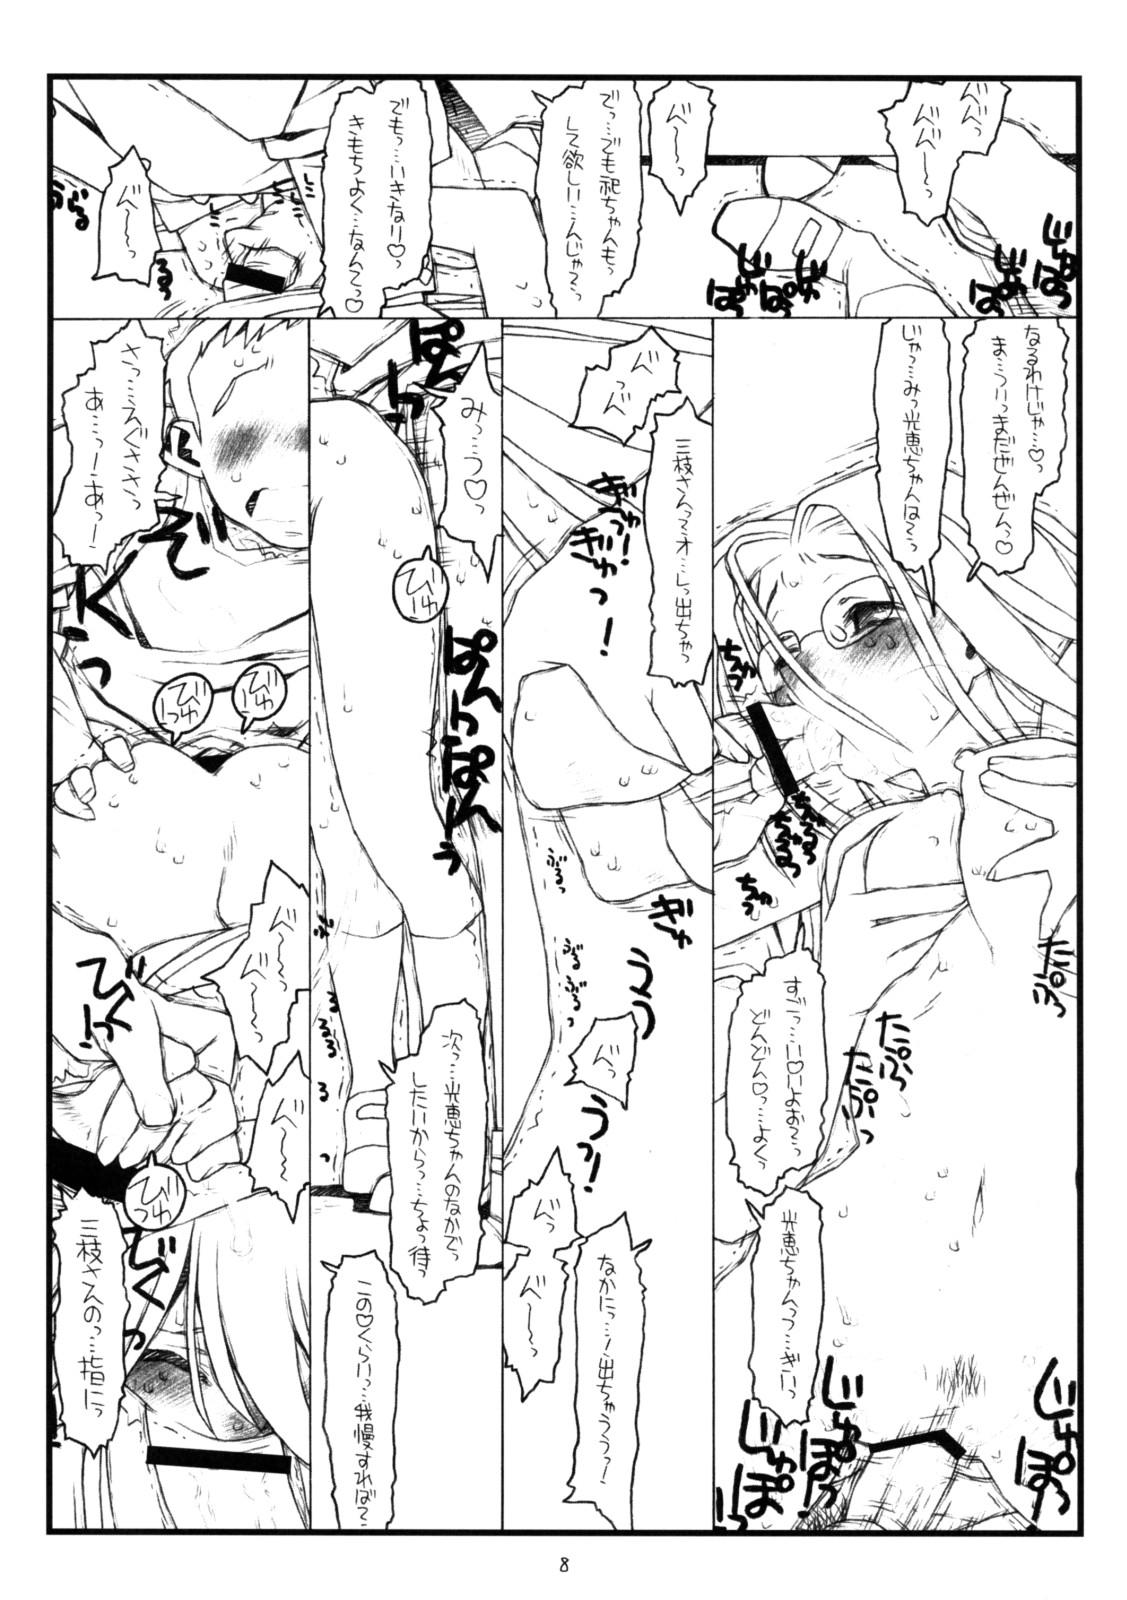 Sex Toy Kamisama no Inai Tsuki - Kamichu Best Blowjob - Page 7